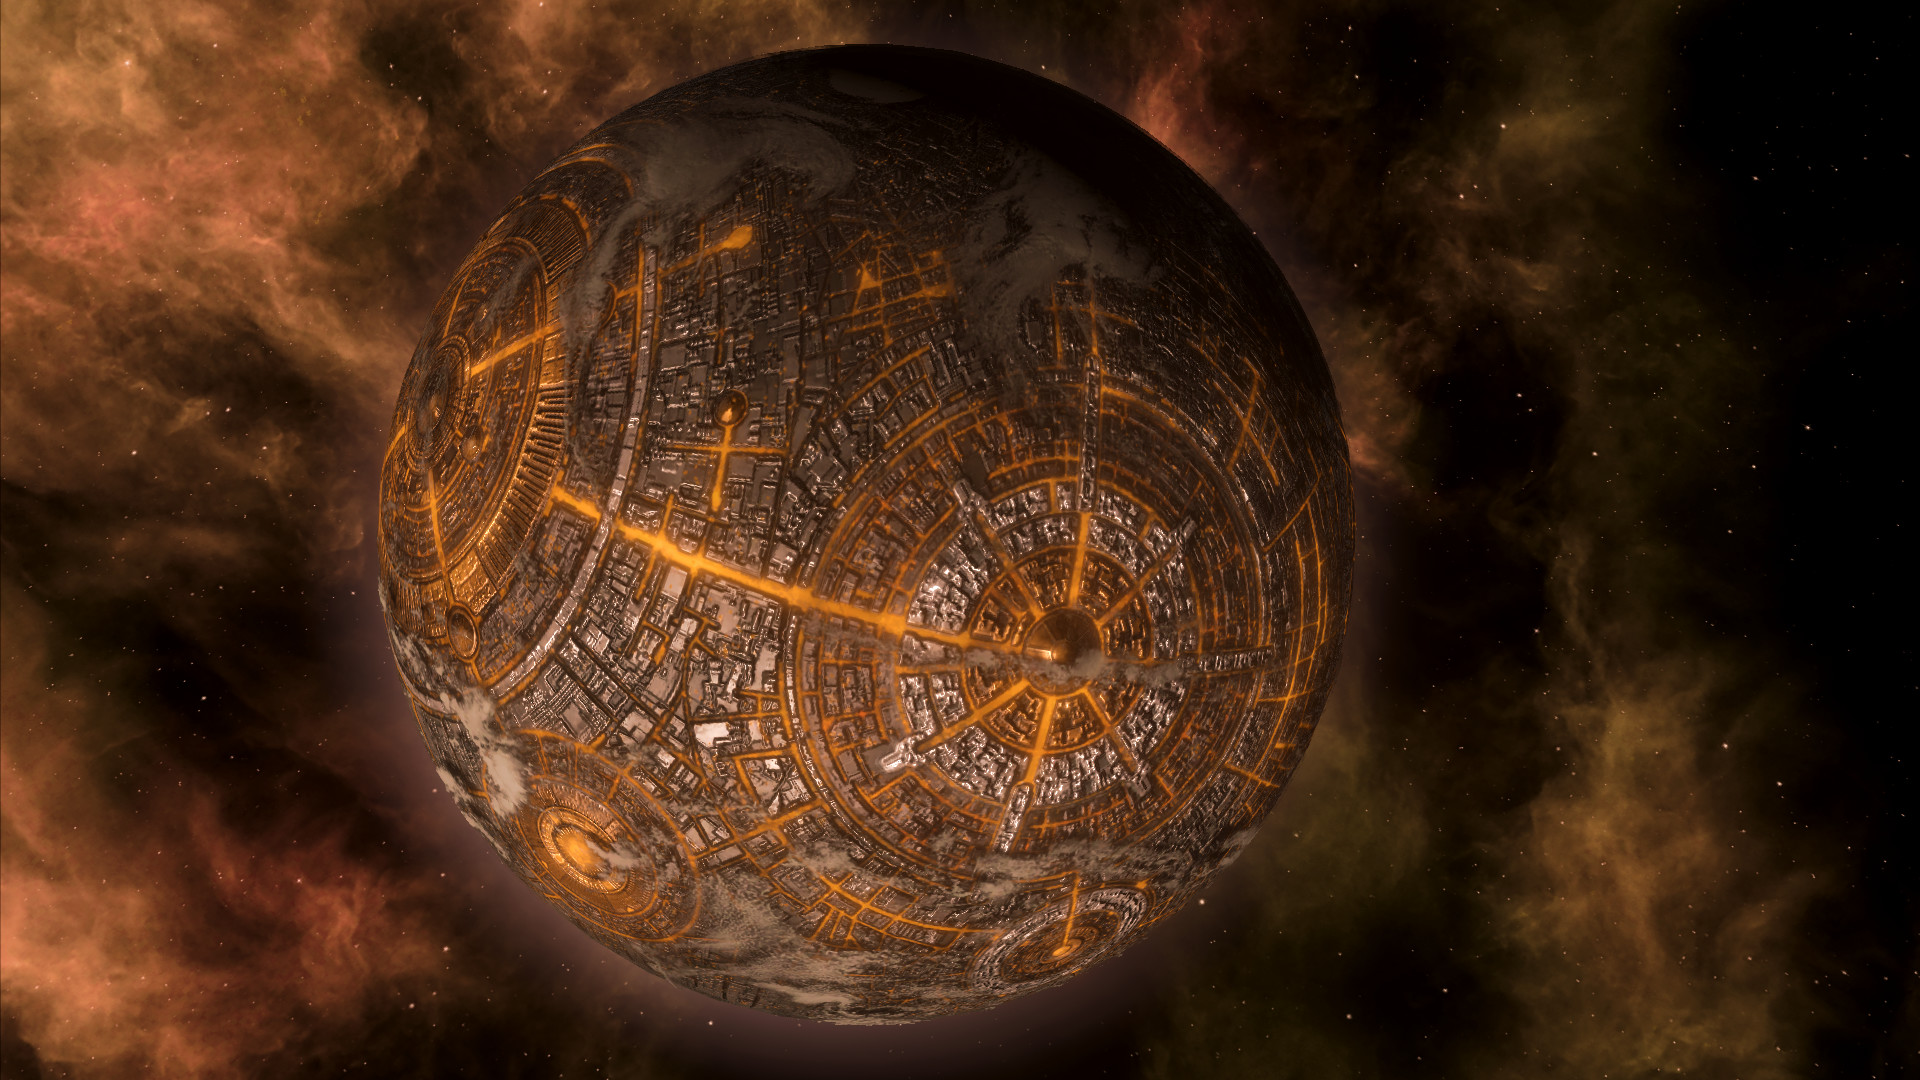 Epik sci-fi Paradox Stellaris gratis dimainkan akhir pekan ini